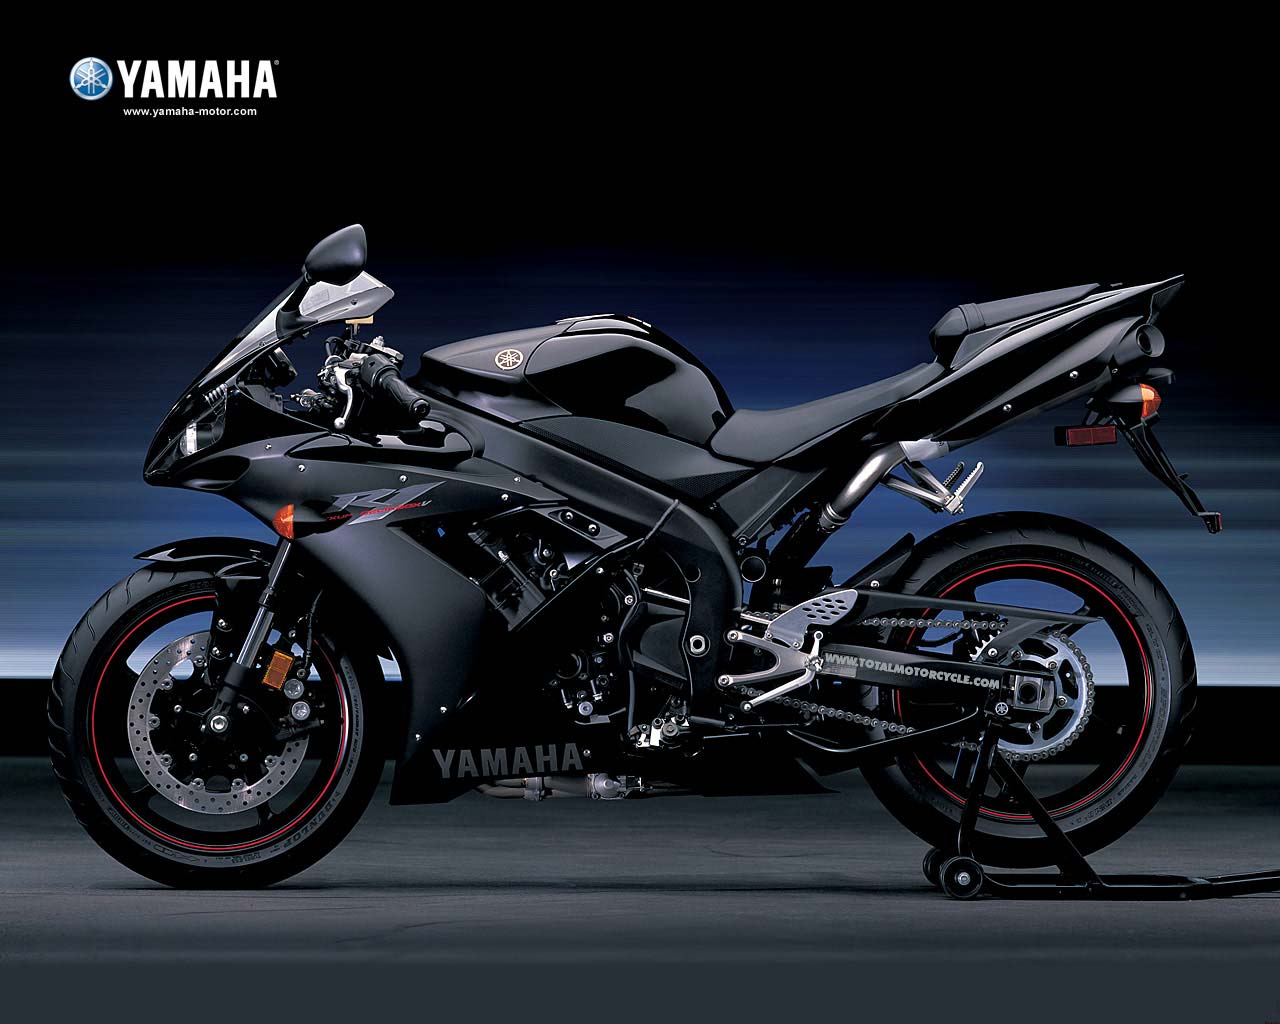 yamaha r6 wallpaper,land vehicle,vehicle,motorcycle,superbike racing,motor vehicle